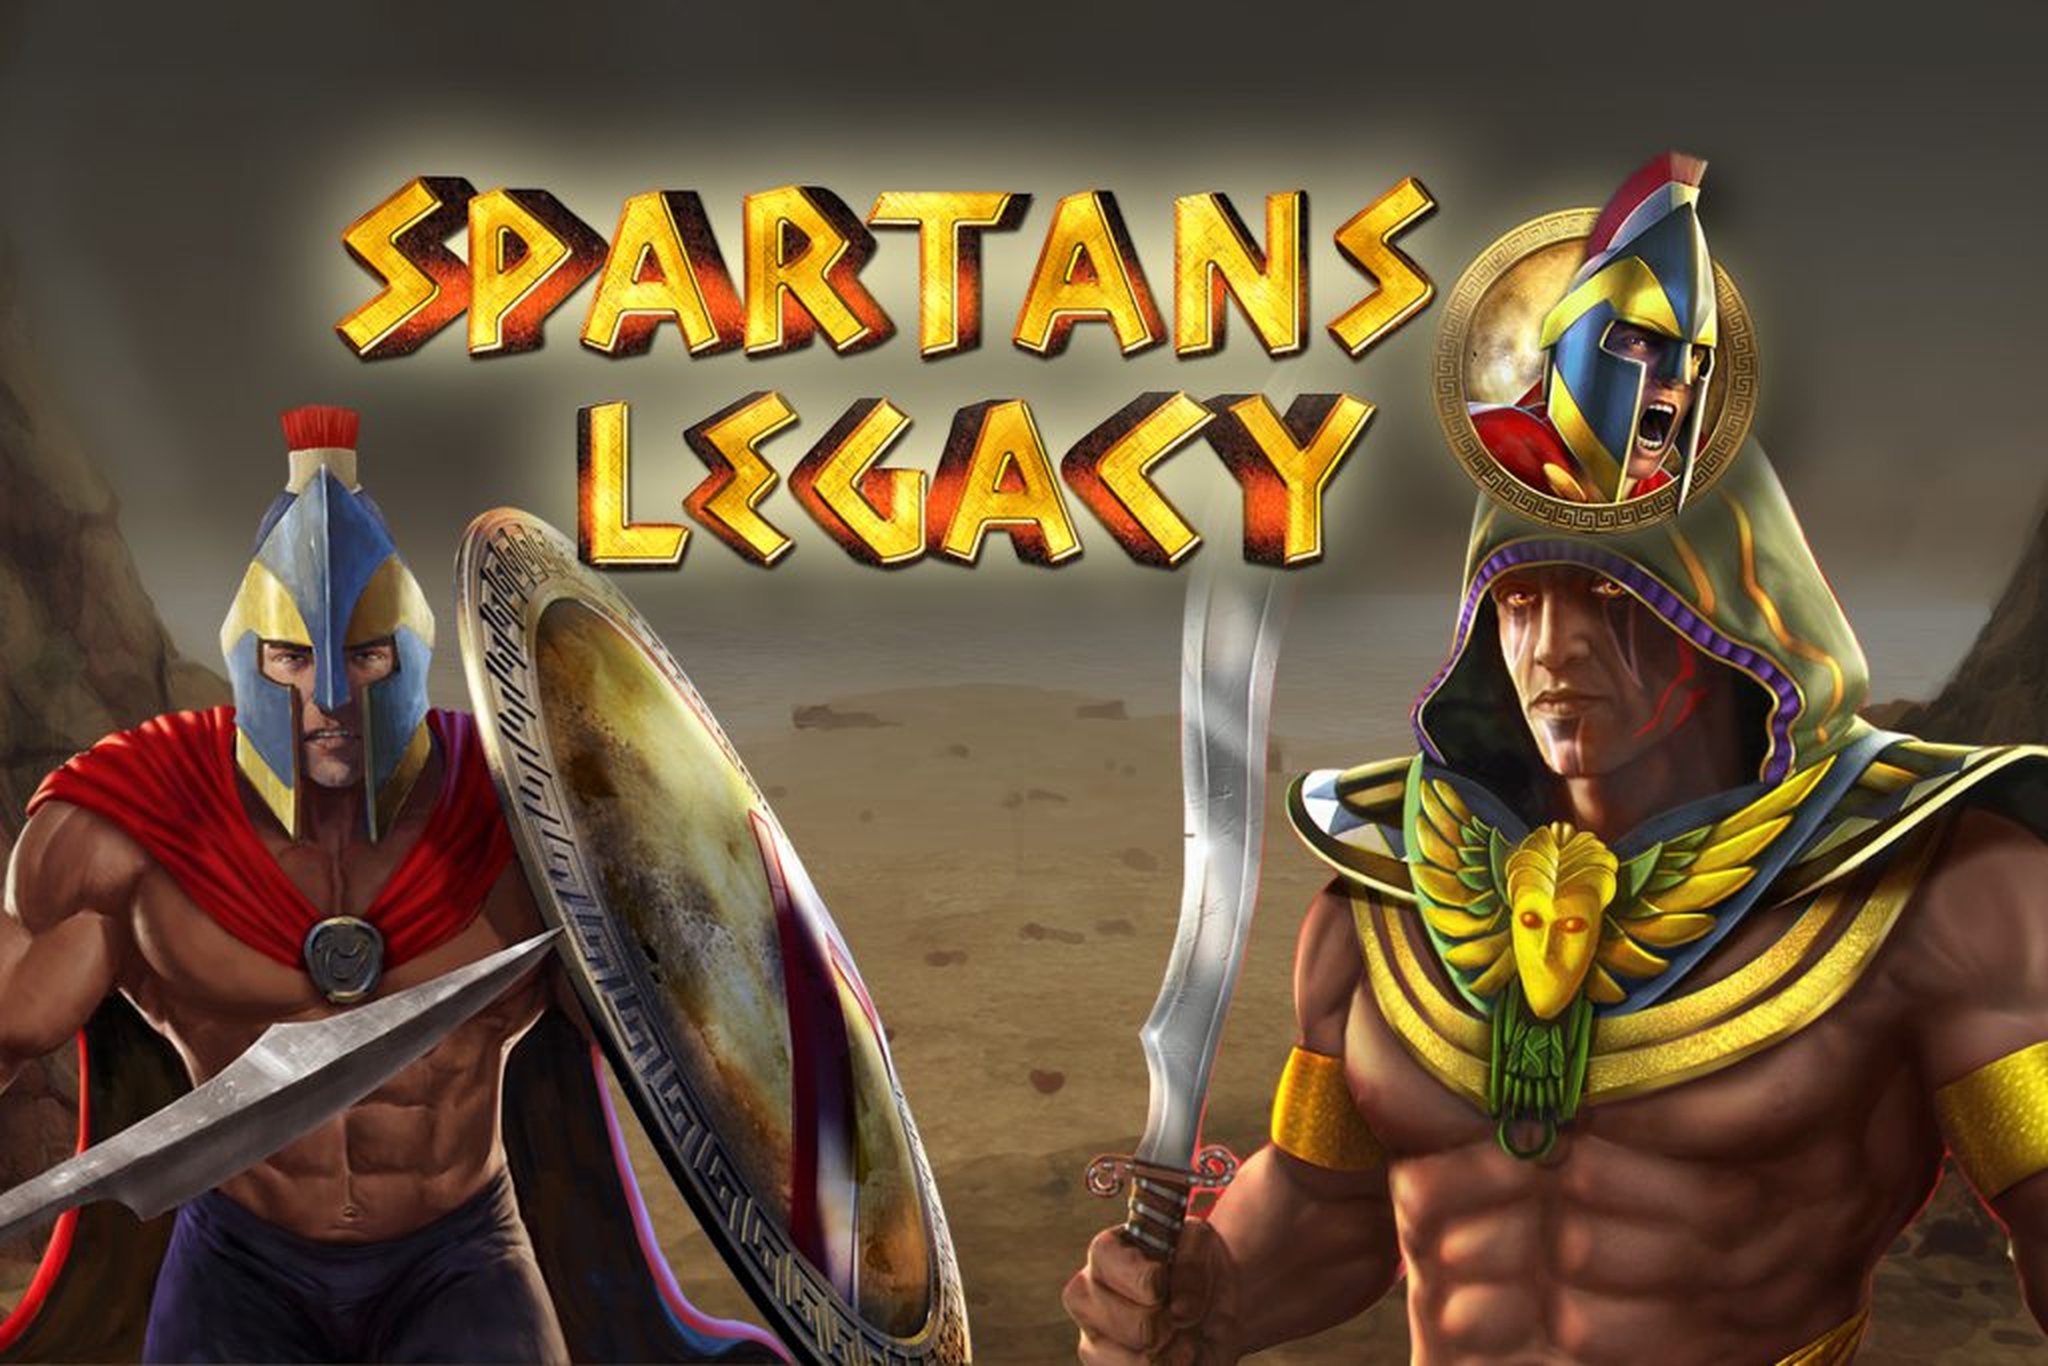 Spartans Legacy demo